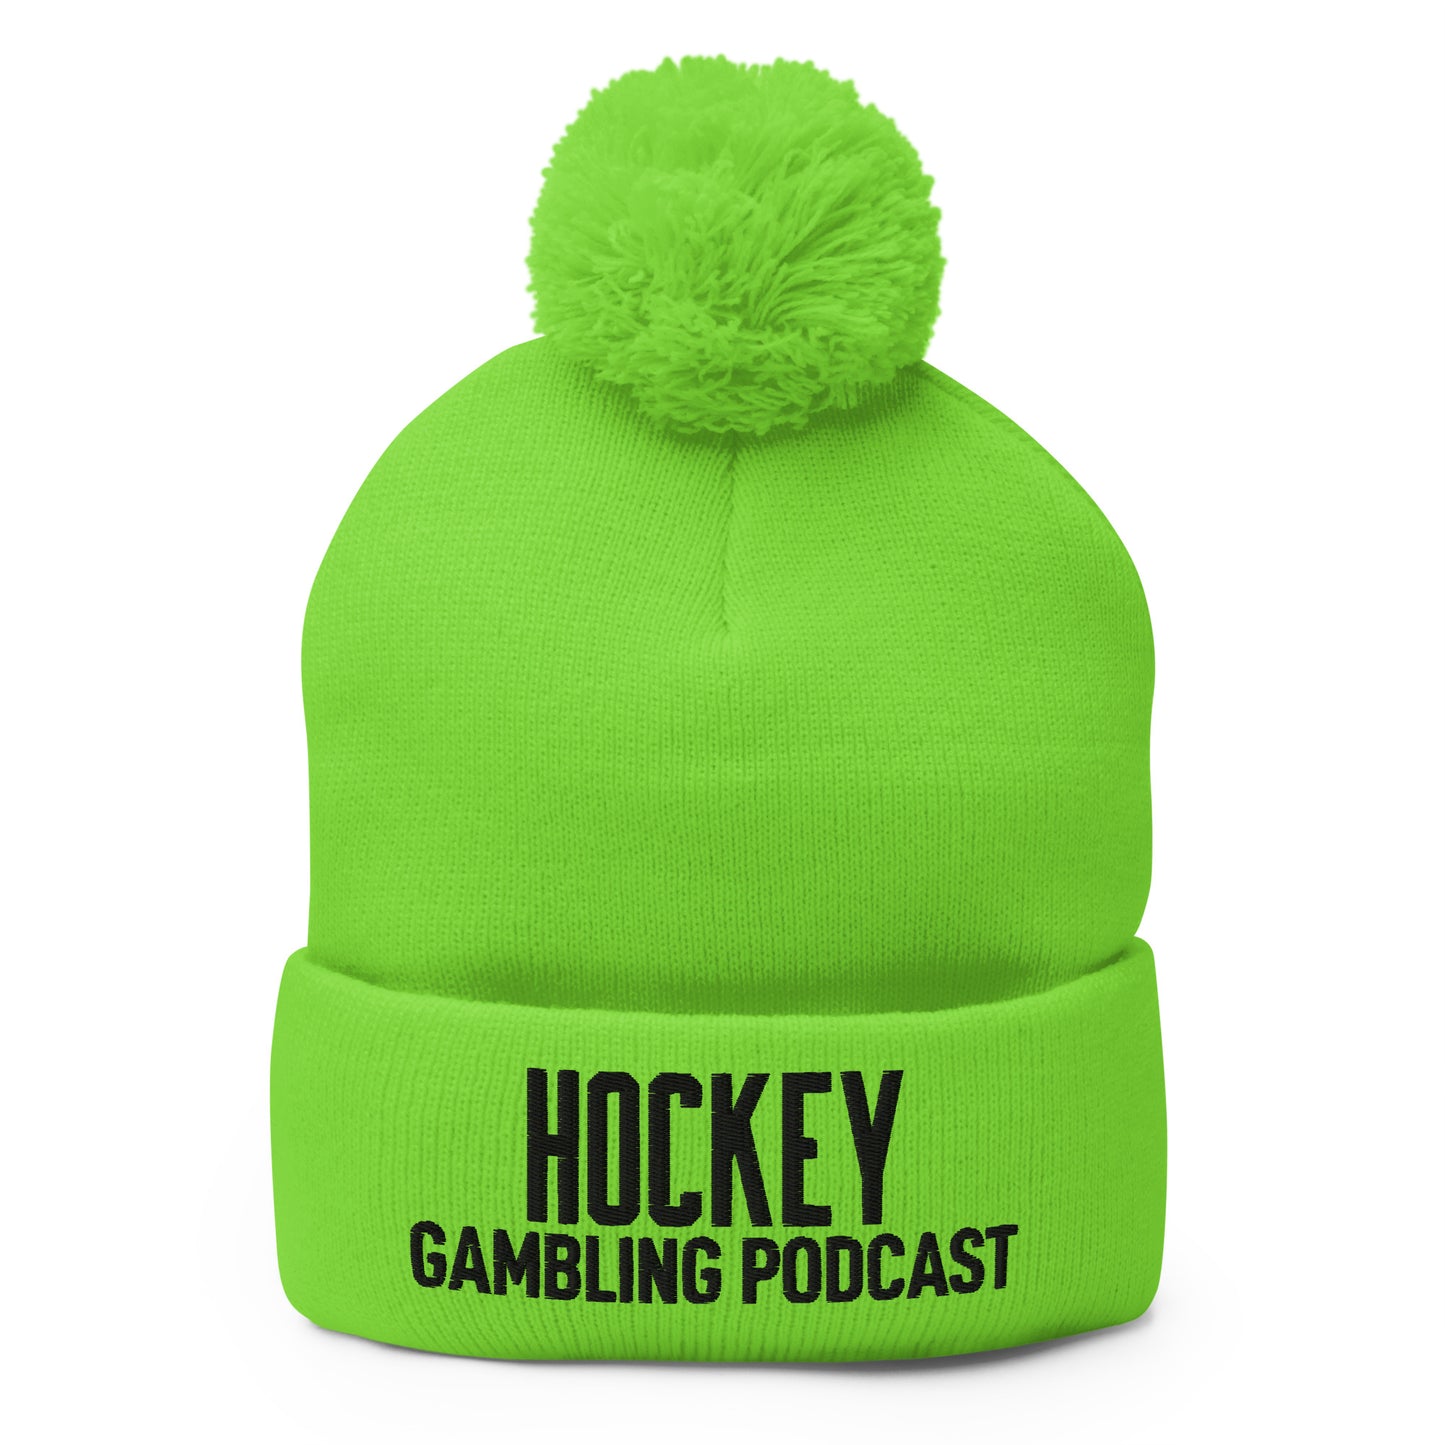 Hockey Gambling Podcast - Pom-Pom Beanie (Black Logo)